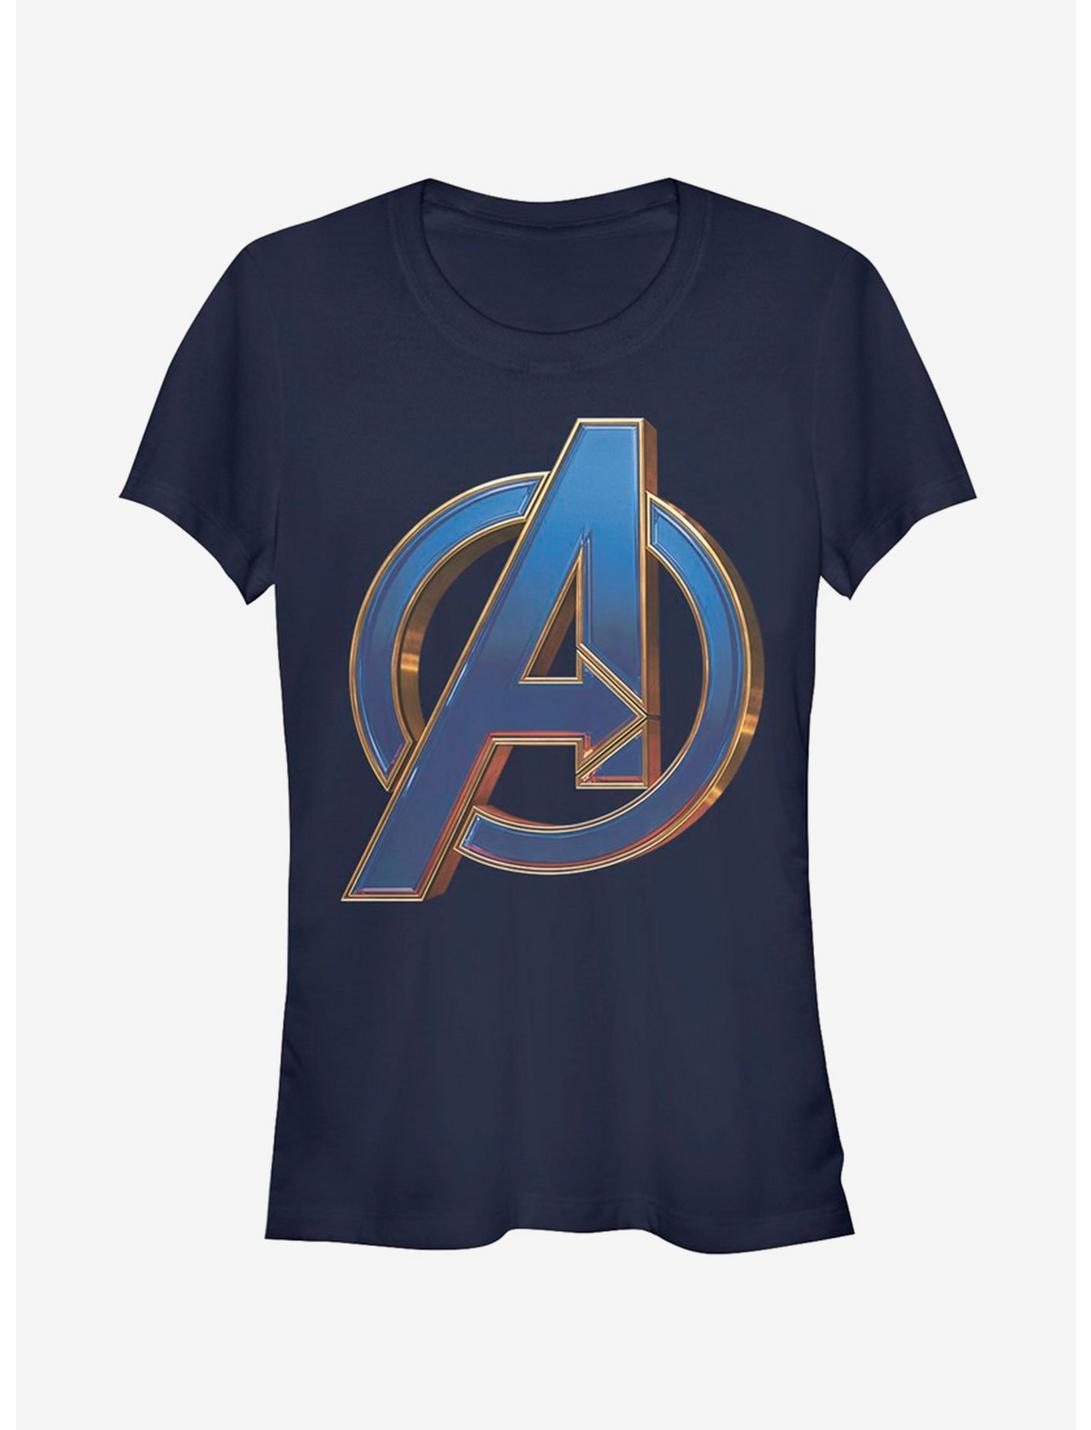 Marvel Avengers: Endgame Blue Logo Girls Navy Blue T-Shirt, NAVY, hi-res